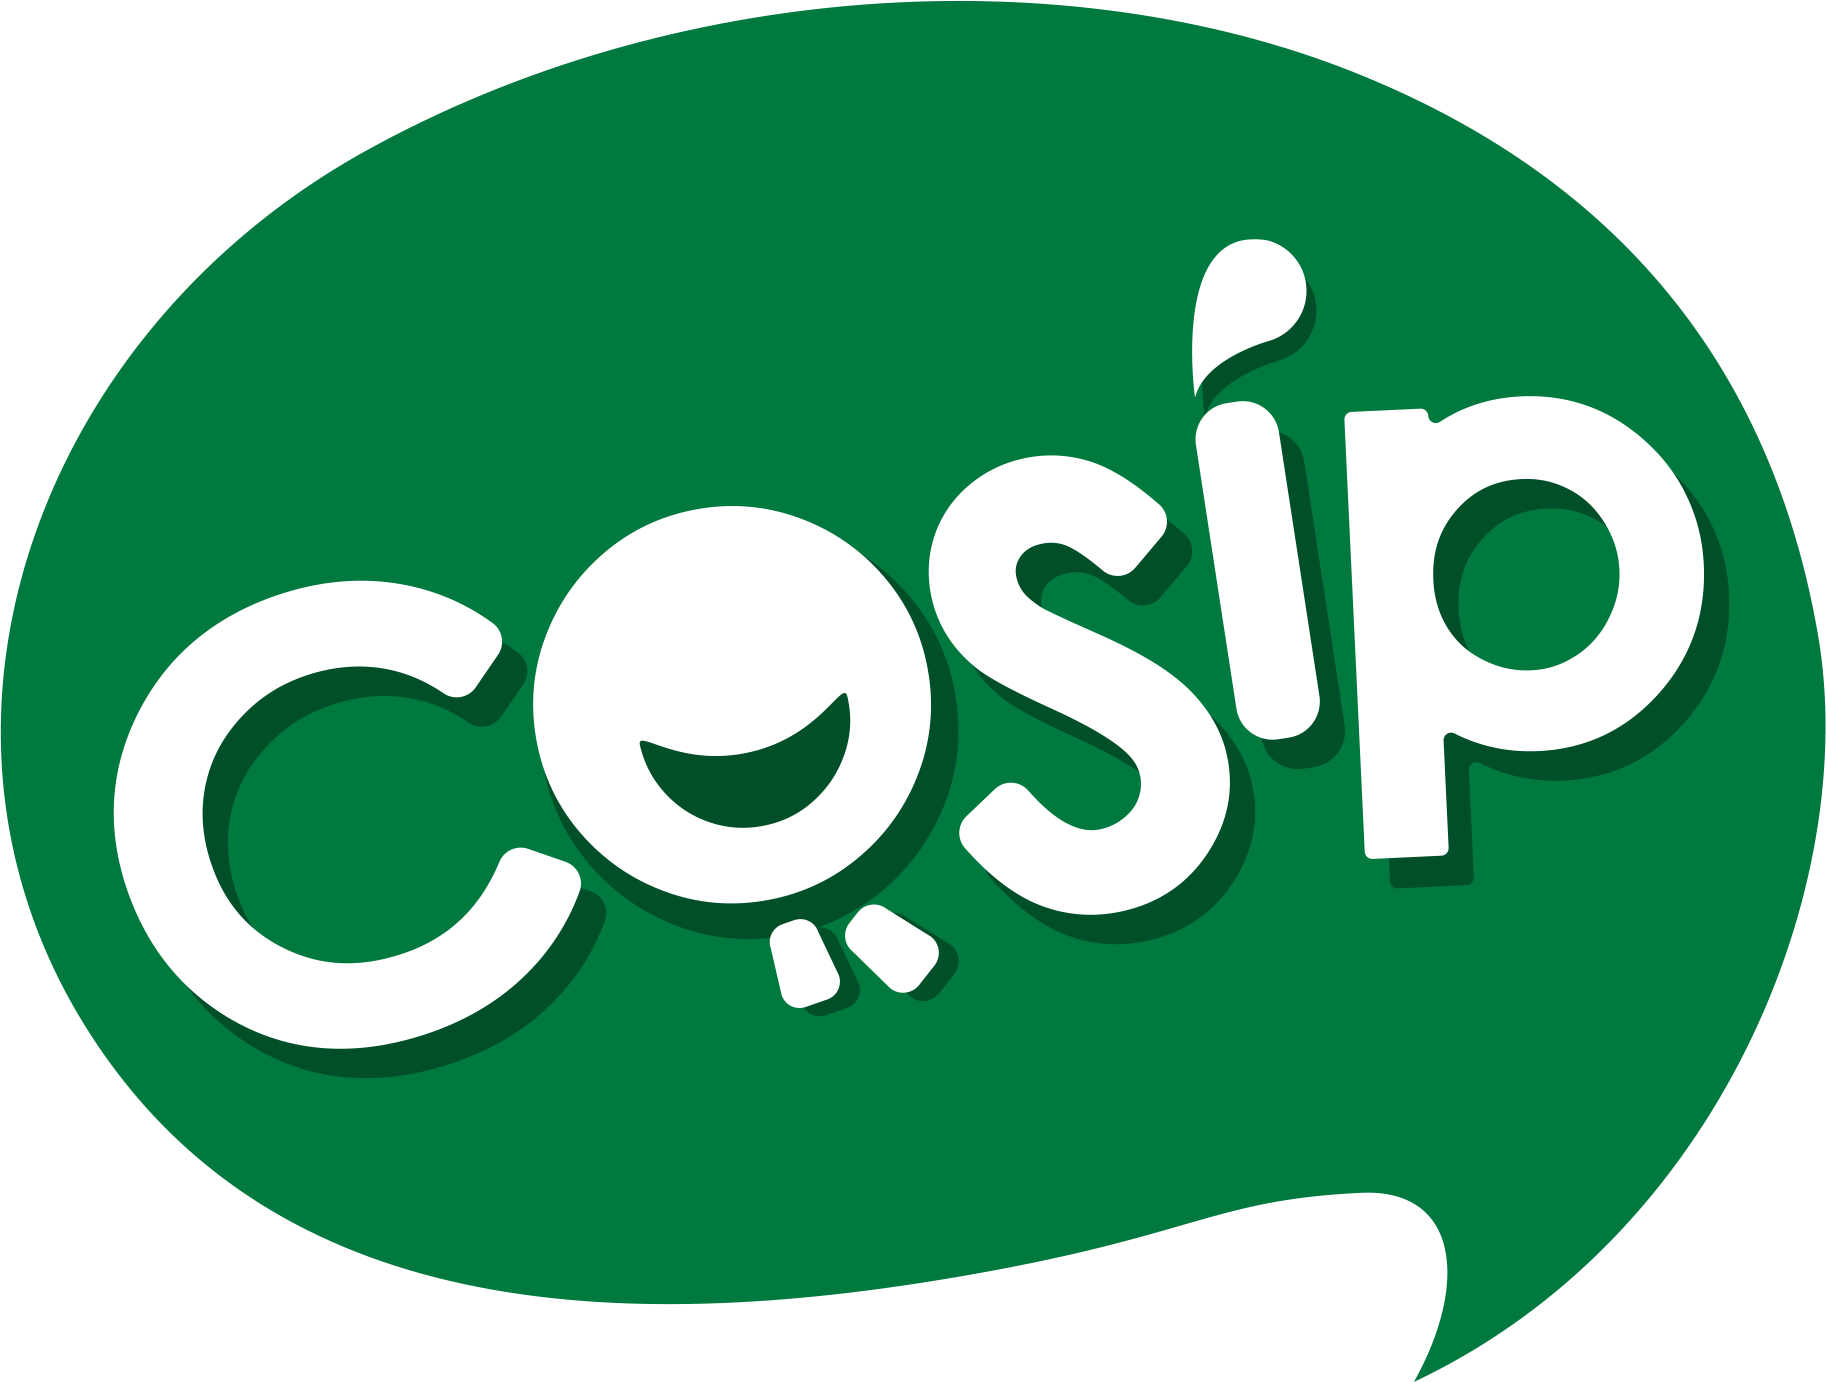 Cosip